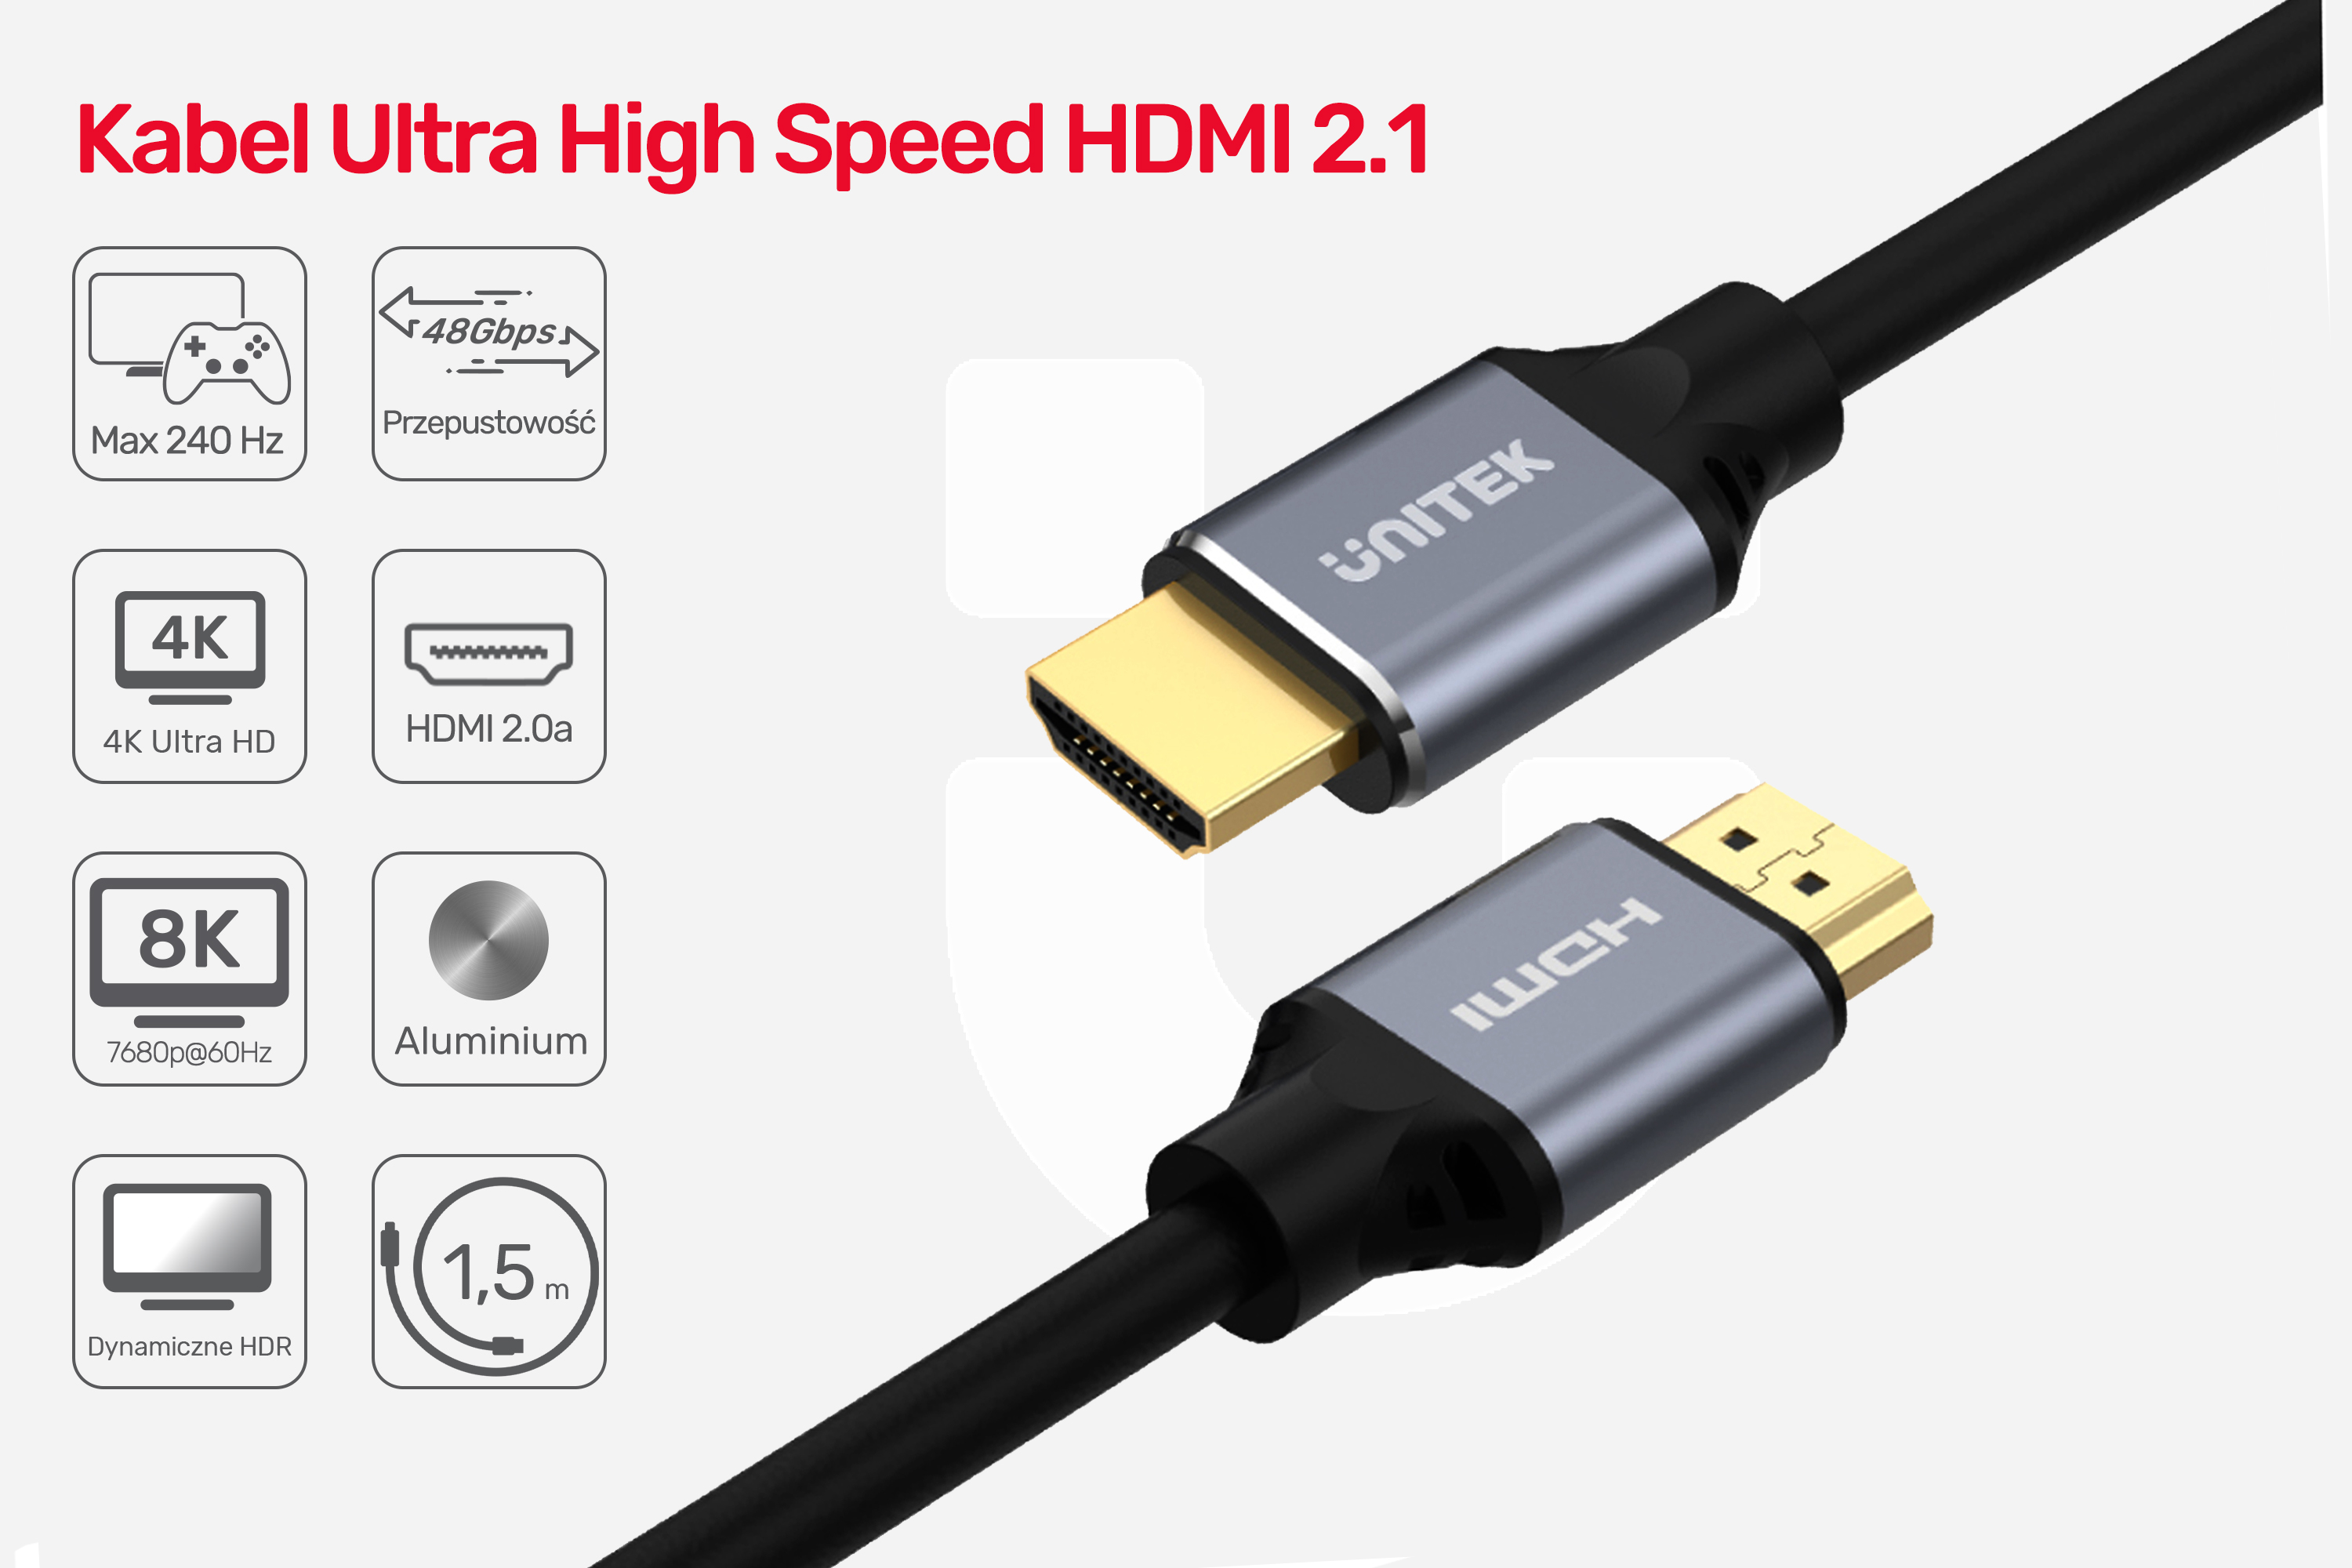 Kabel Ultra High Speed HDMI 2.1